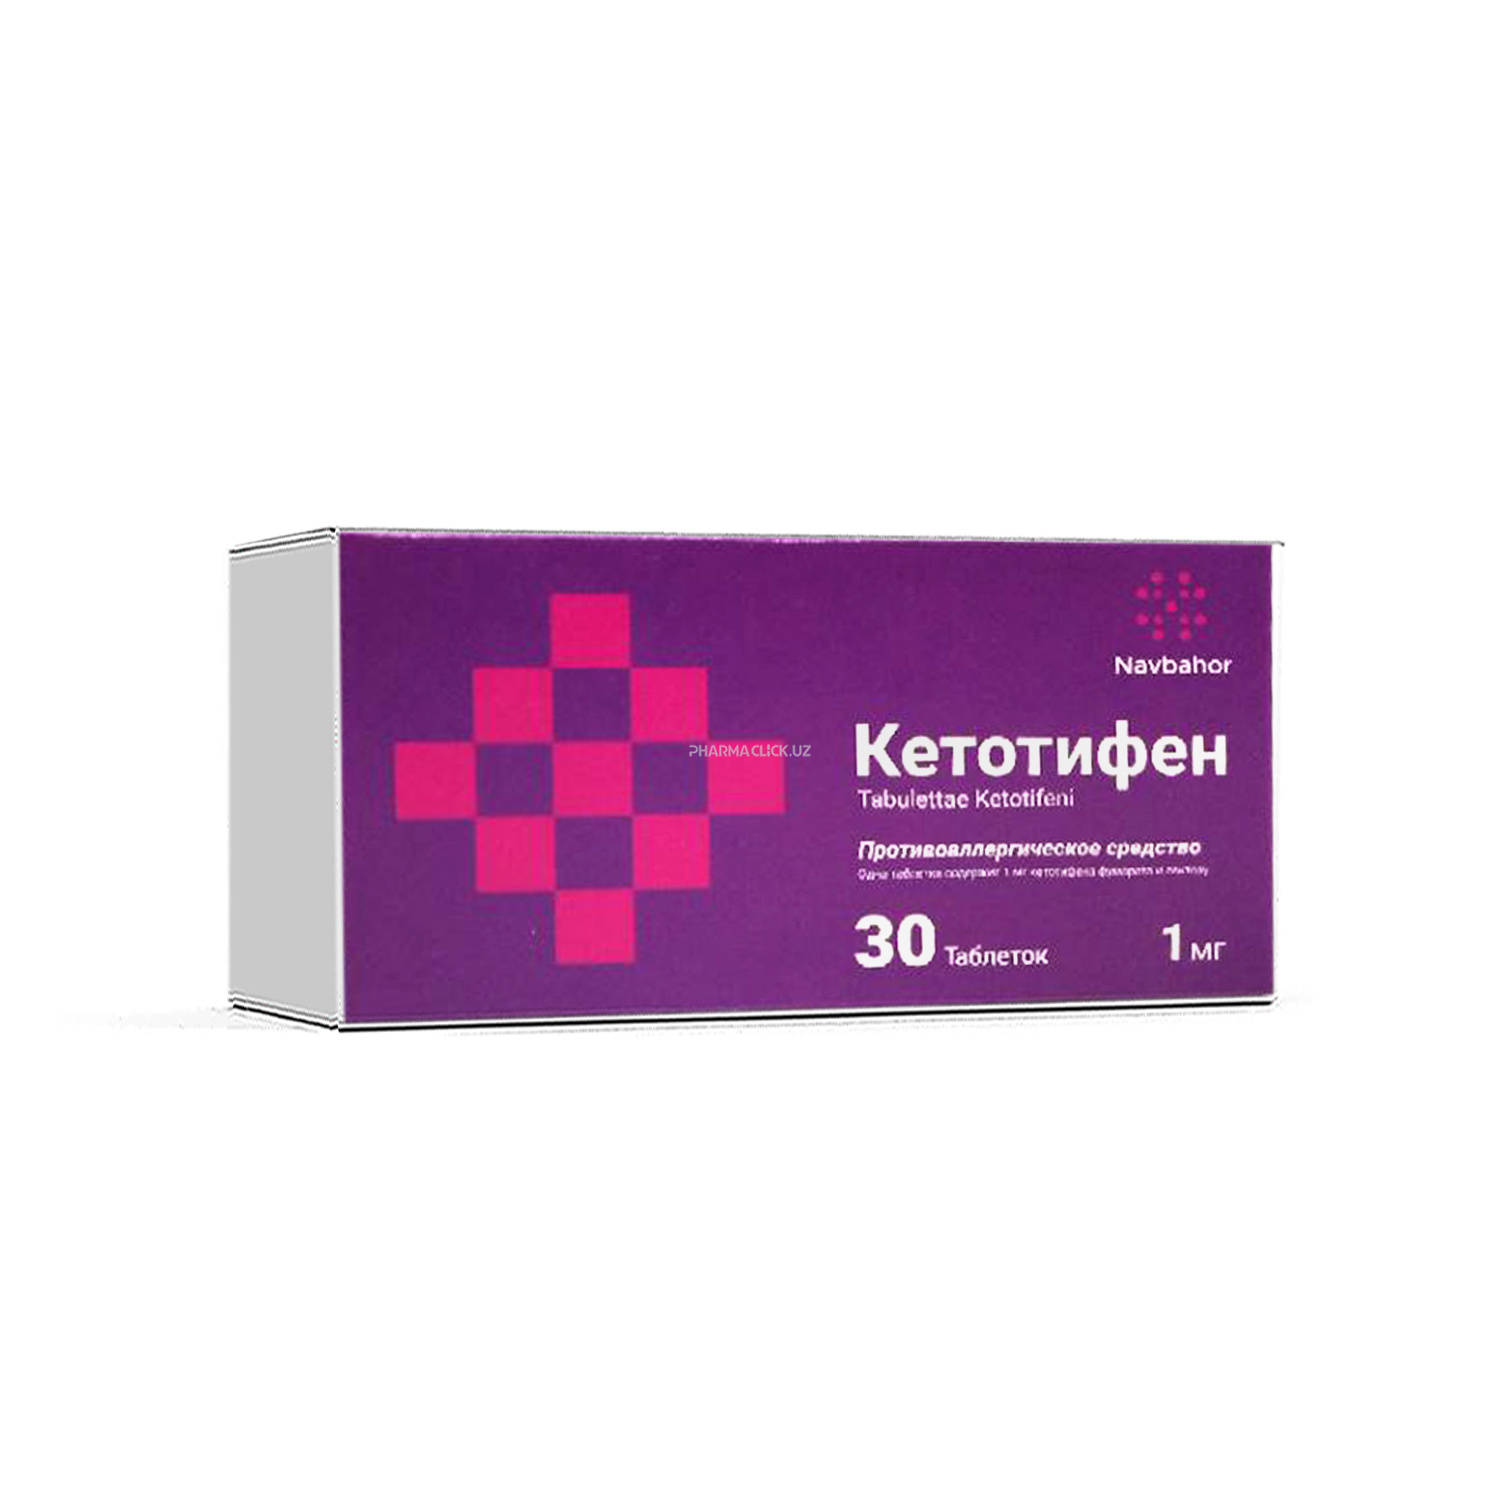 Ketotifen tab 1 mg №30 (Navbahor Sanoat)